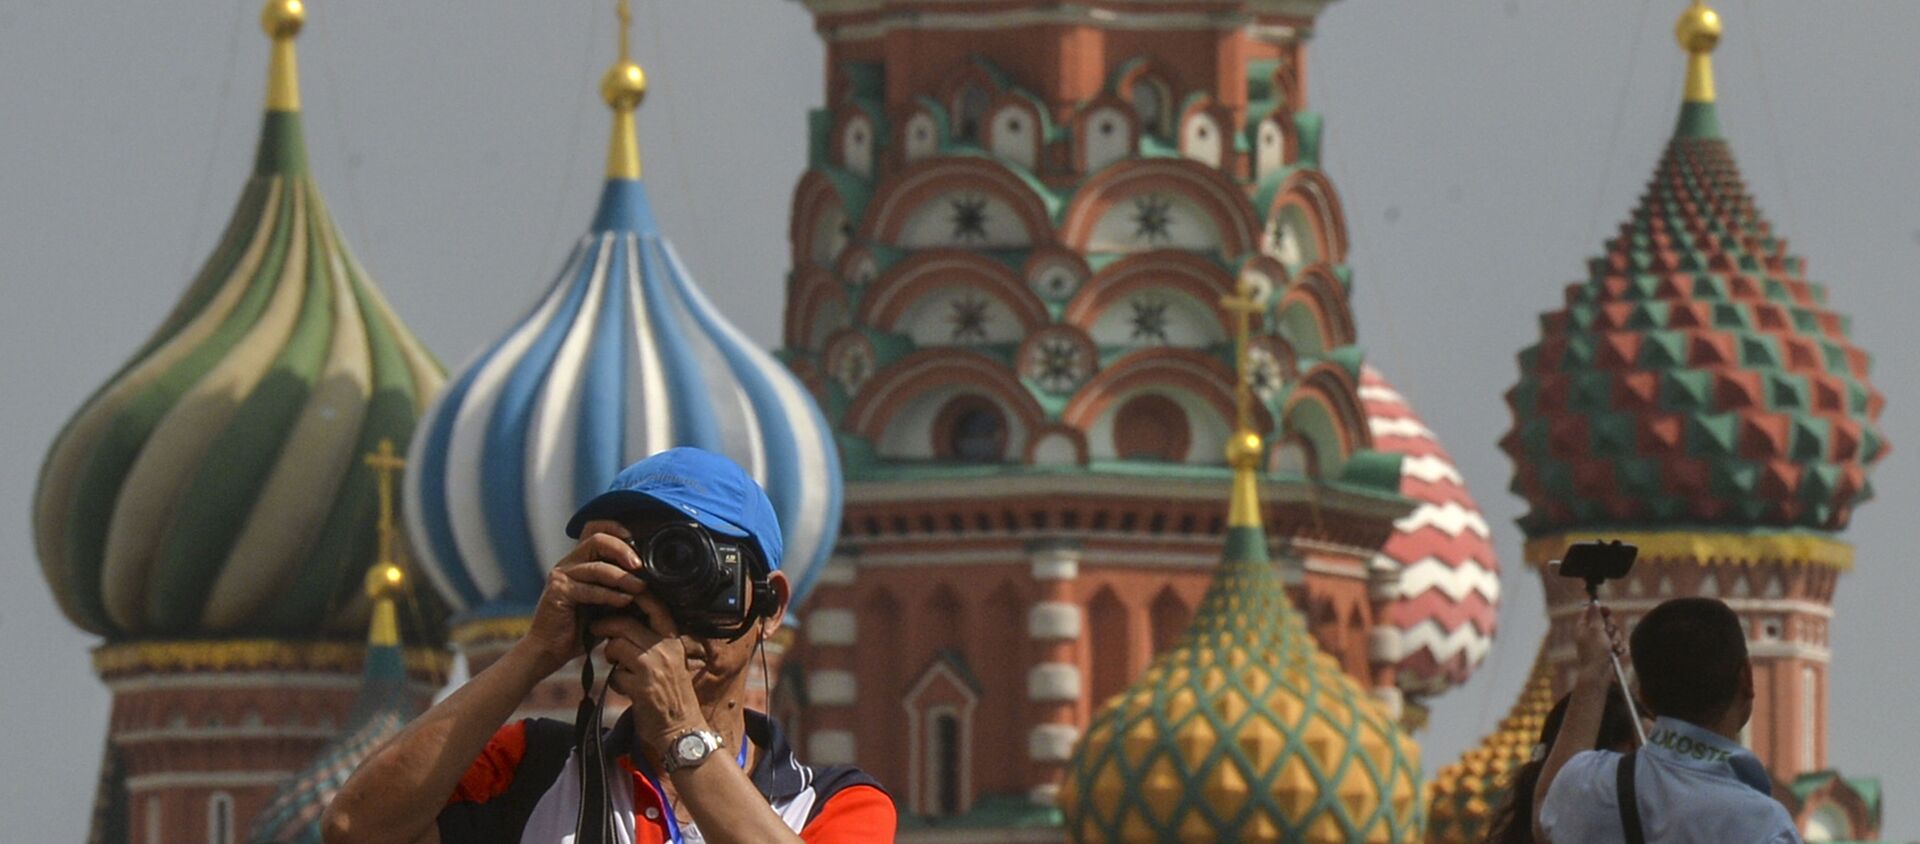 Турист фотографирует на Красной площади в Москве - Sputnik Грузия, 1920, 27.05.2021